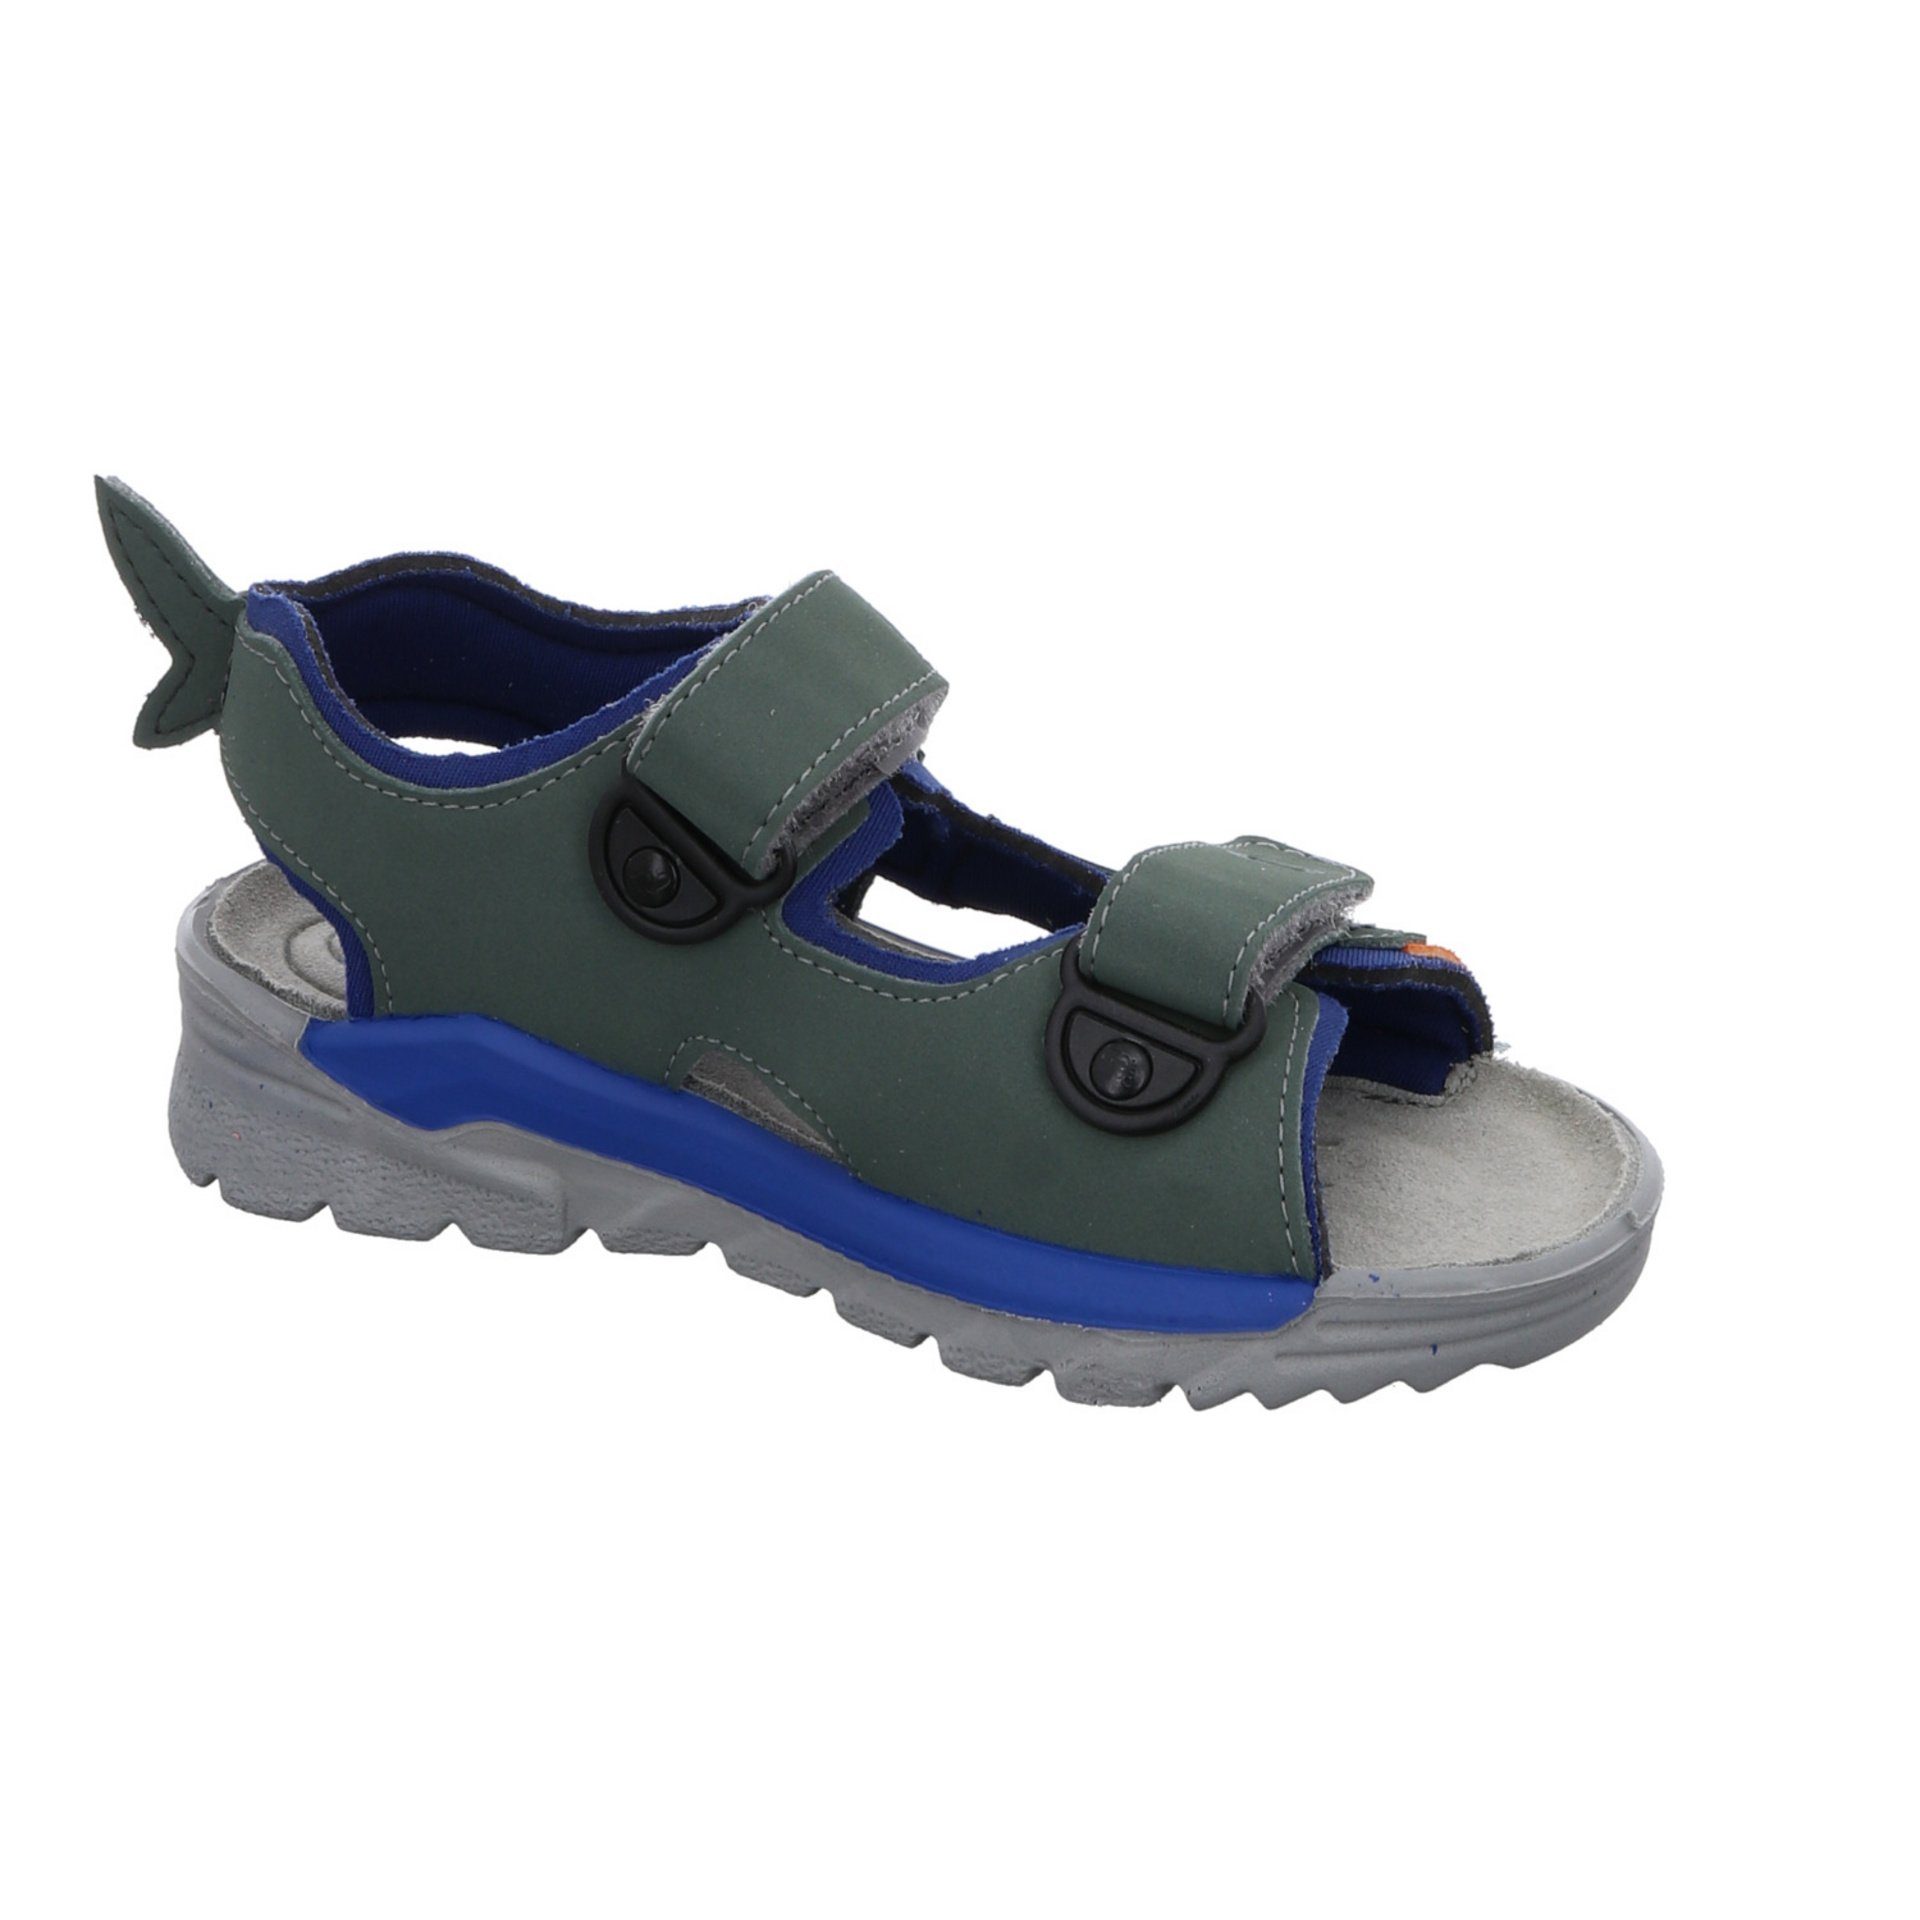 Sandale Schuhe Textil Shark grün Kinderschuhe Sandalen Jungen Sandale Ricosta